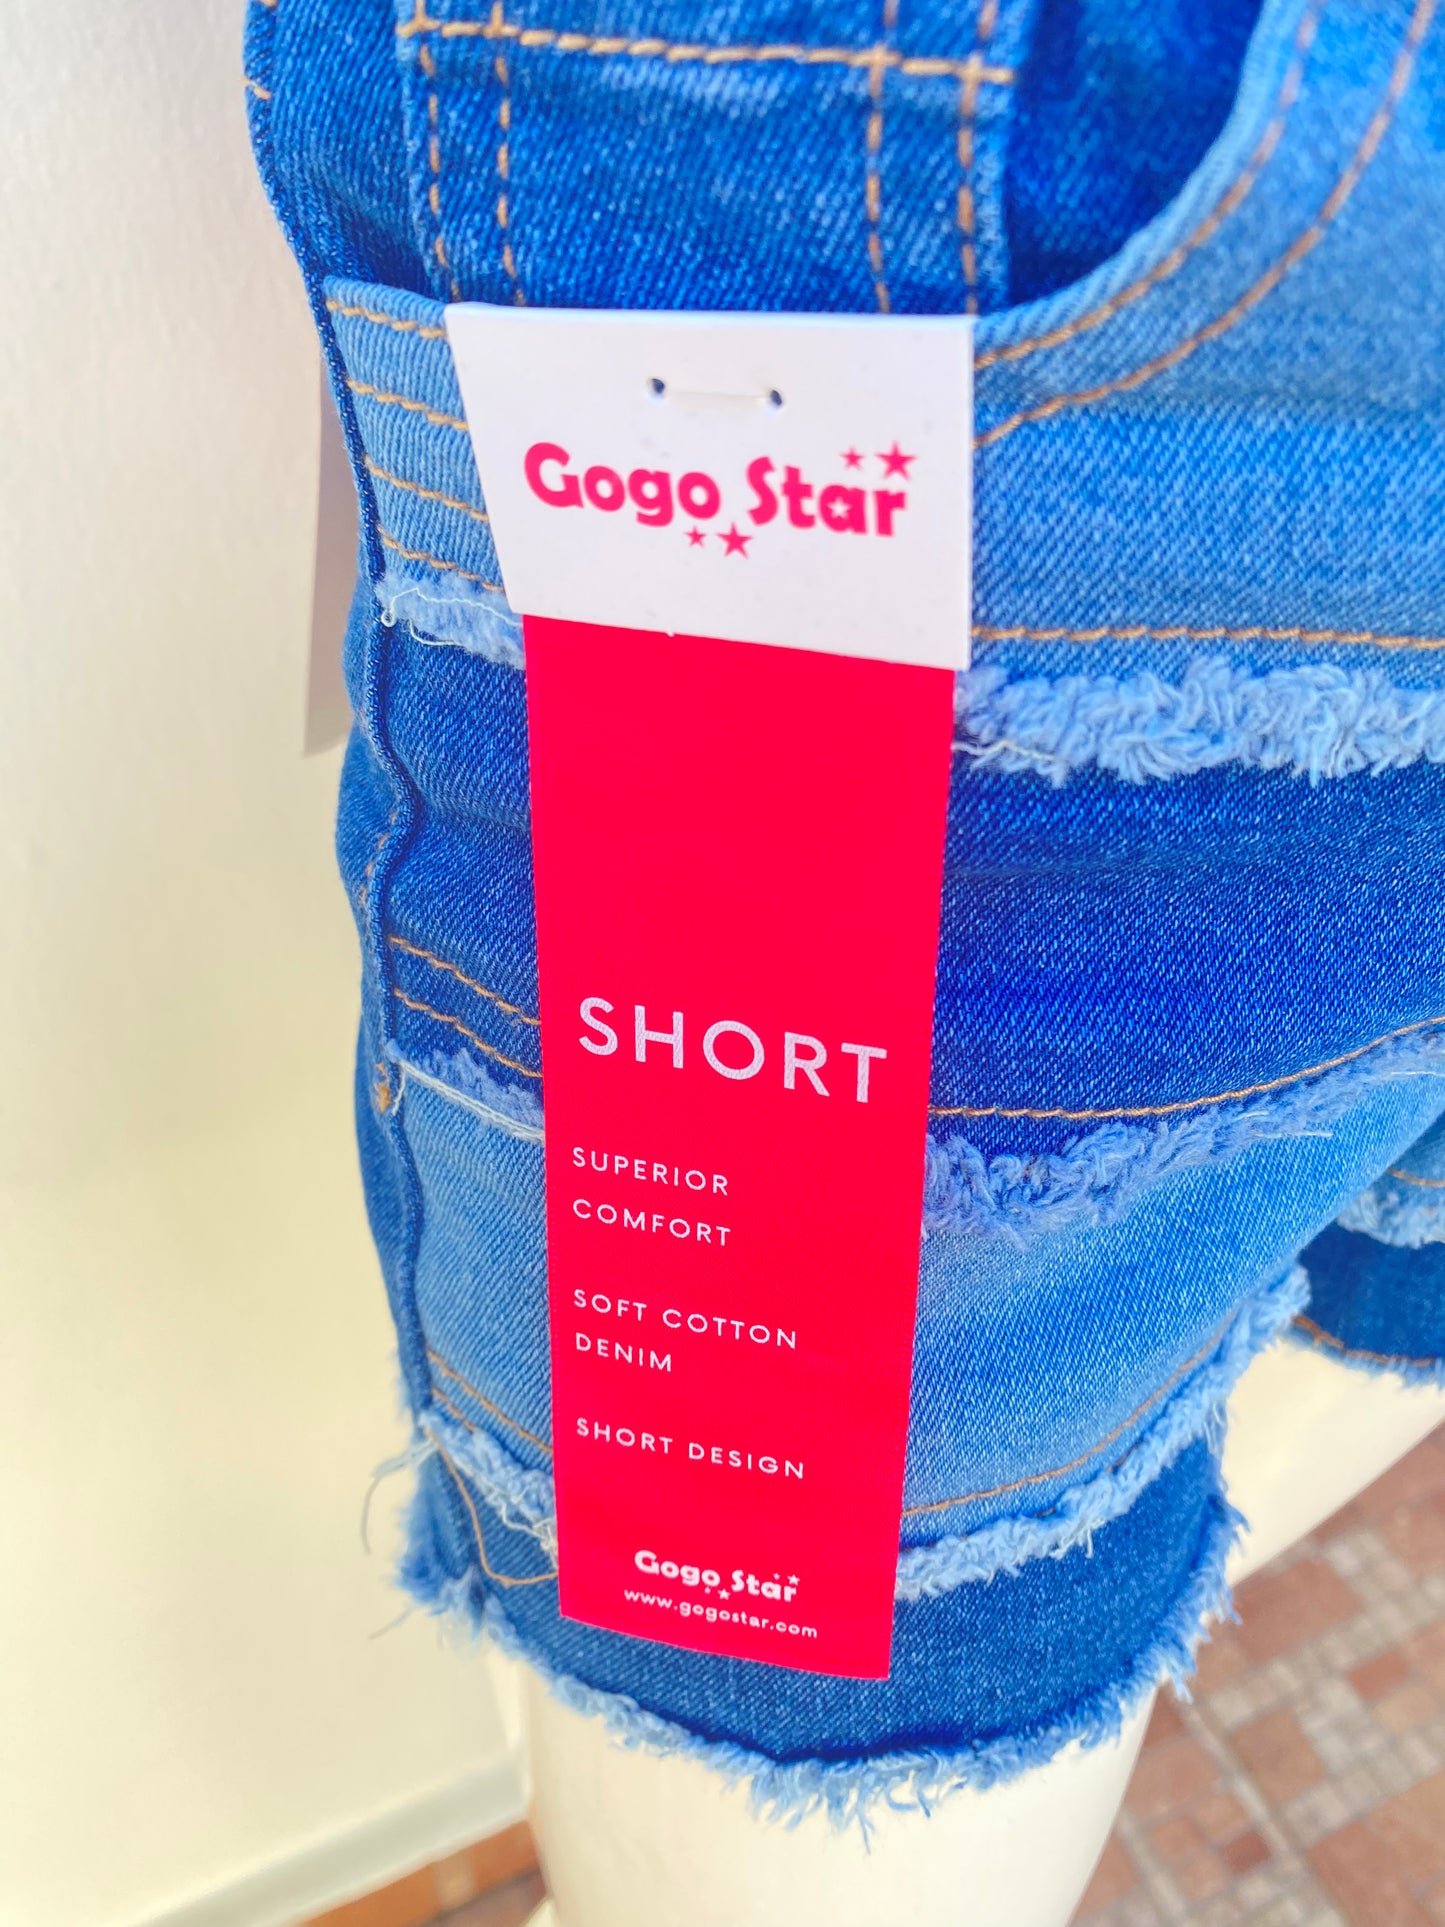 Short Gogo star original con varios tonos azul y ruedo destruido